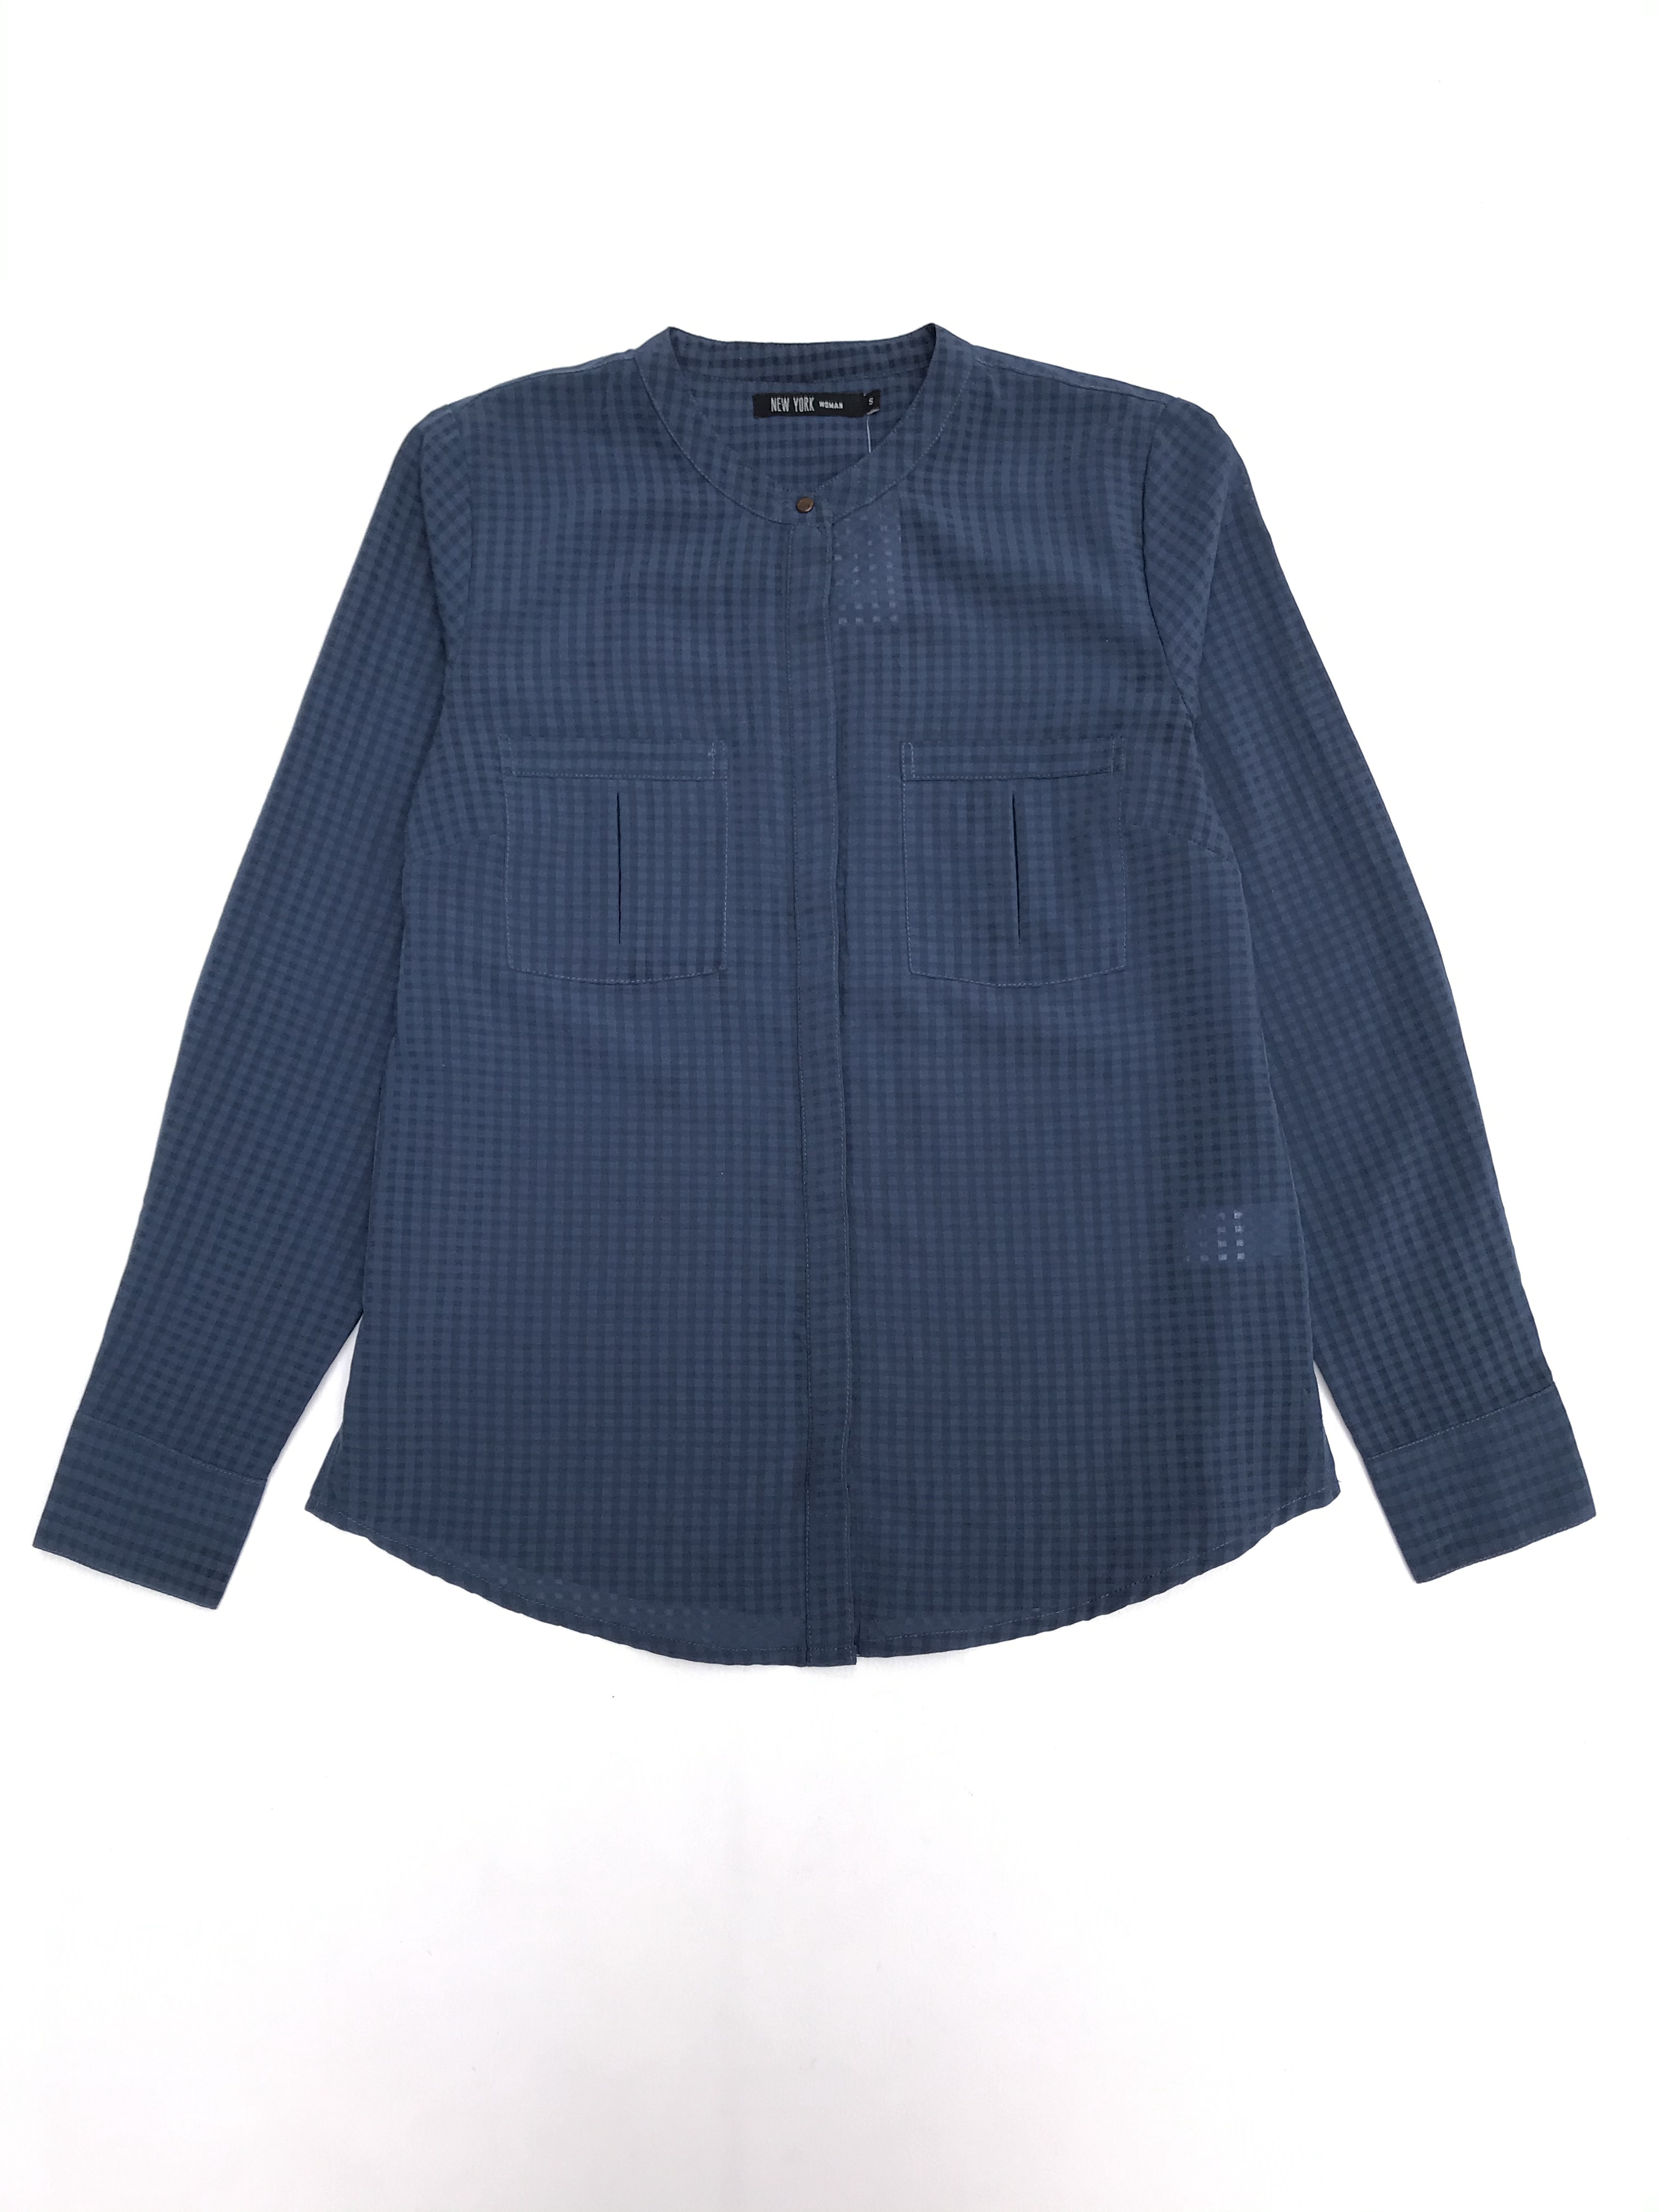 Blusa de cuadros en tonos azules, tela plana, fila de botones y bolsillos delanteros